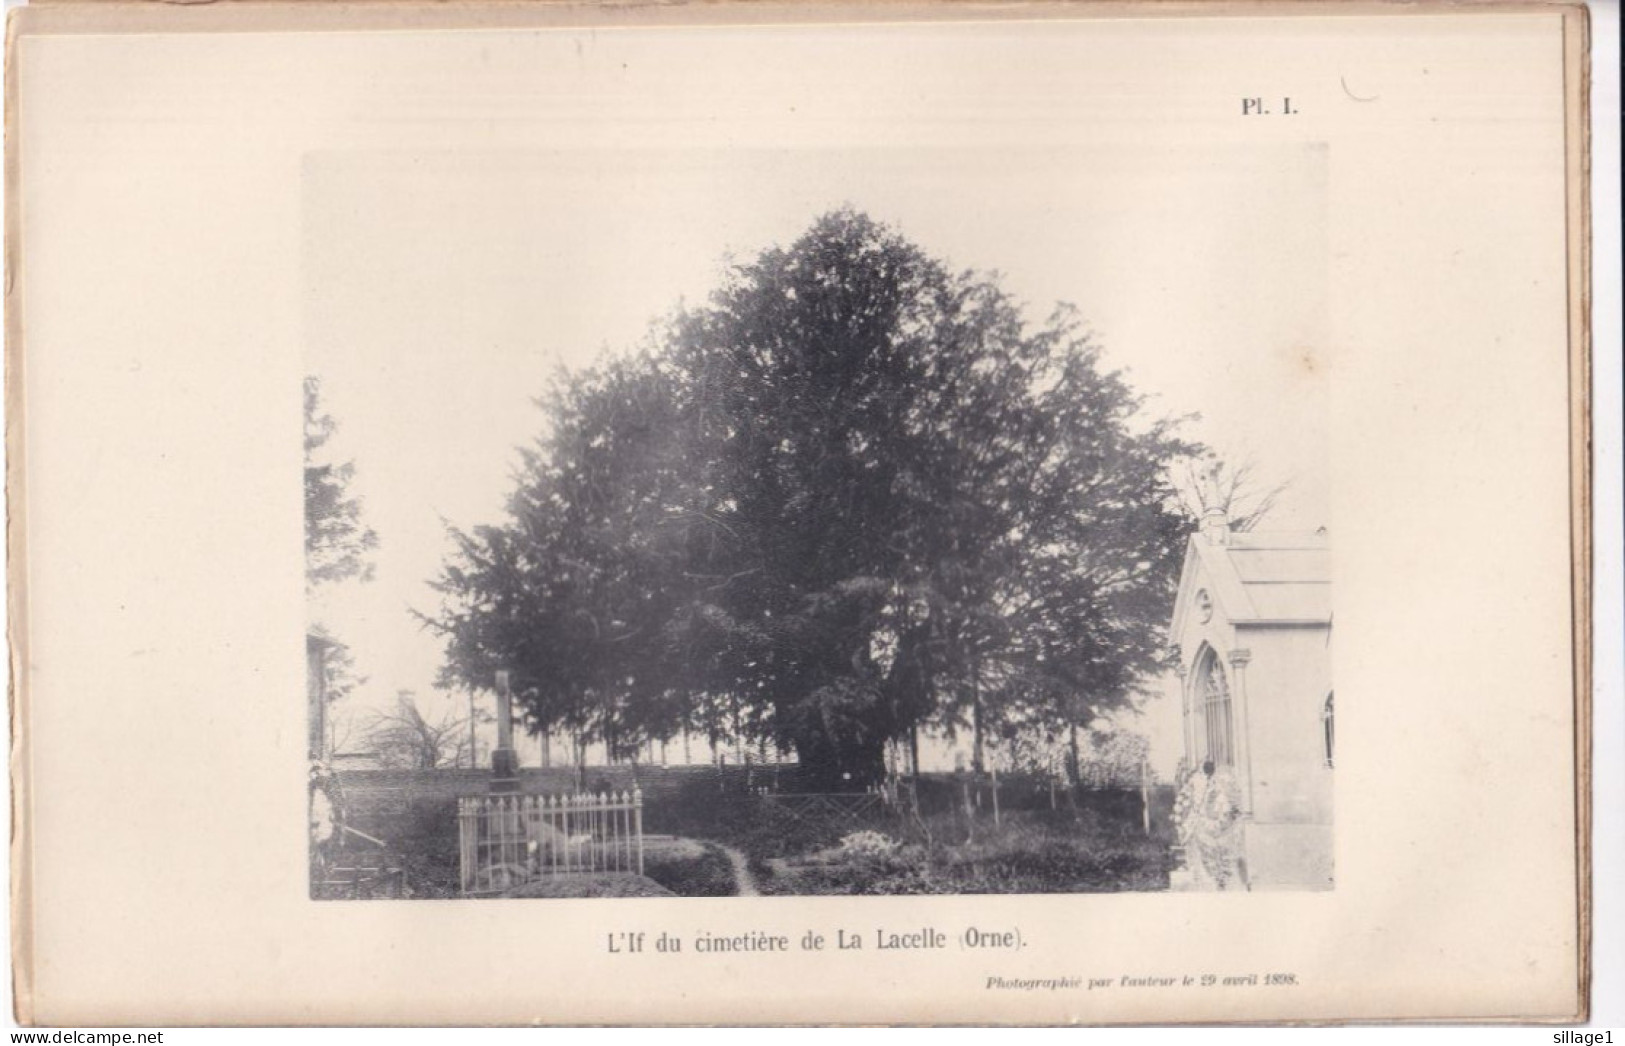 La Lacelle (Orne 61) L'If Di Cimetière De La Lacelle (Orne) - Planche - Photographié Le 29 Avril 1898 - Andere Pläne